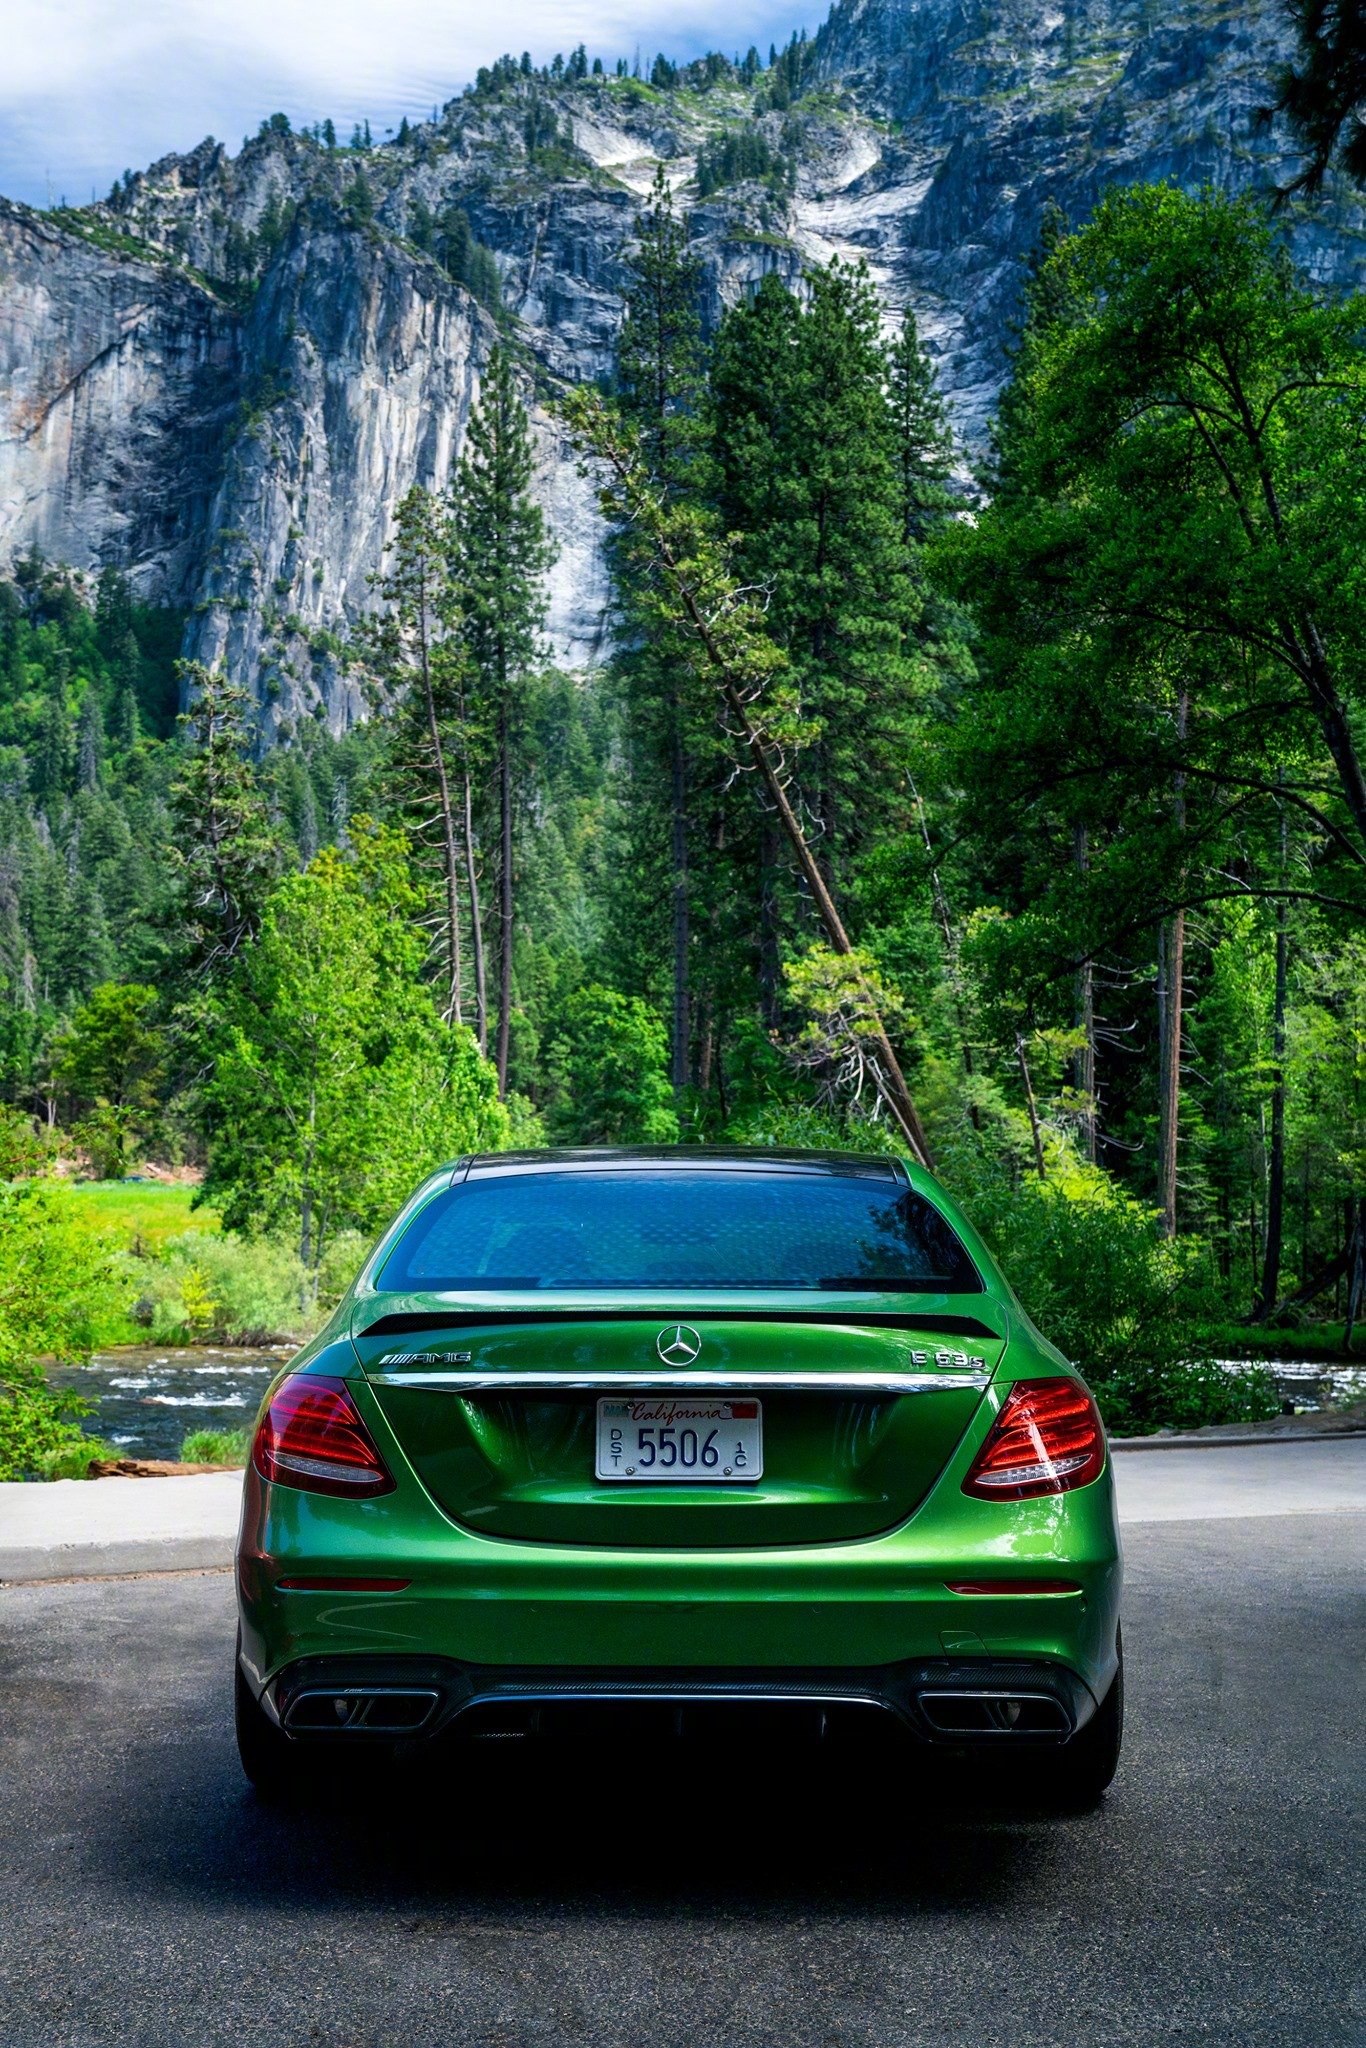 汽车看点 自媒体 正文 绿色的奔驰e63第一次见,好帅张张都是超清壁纸